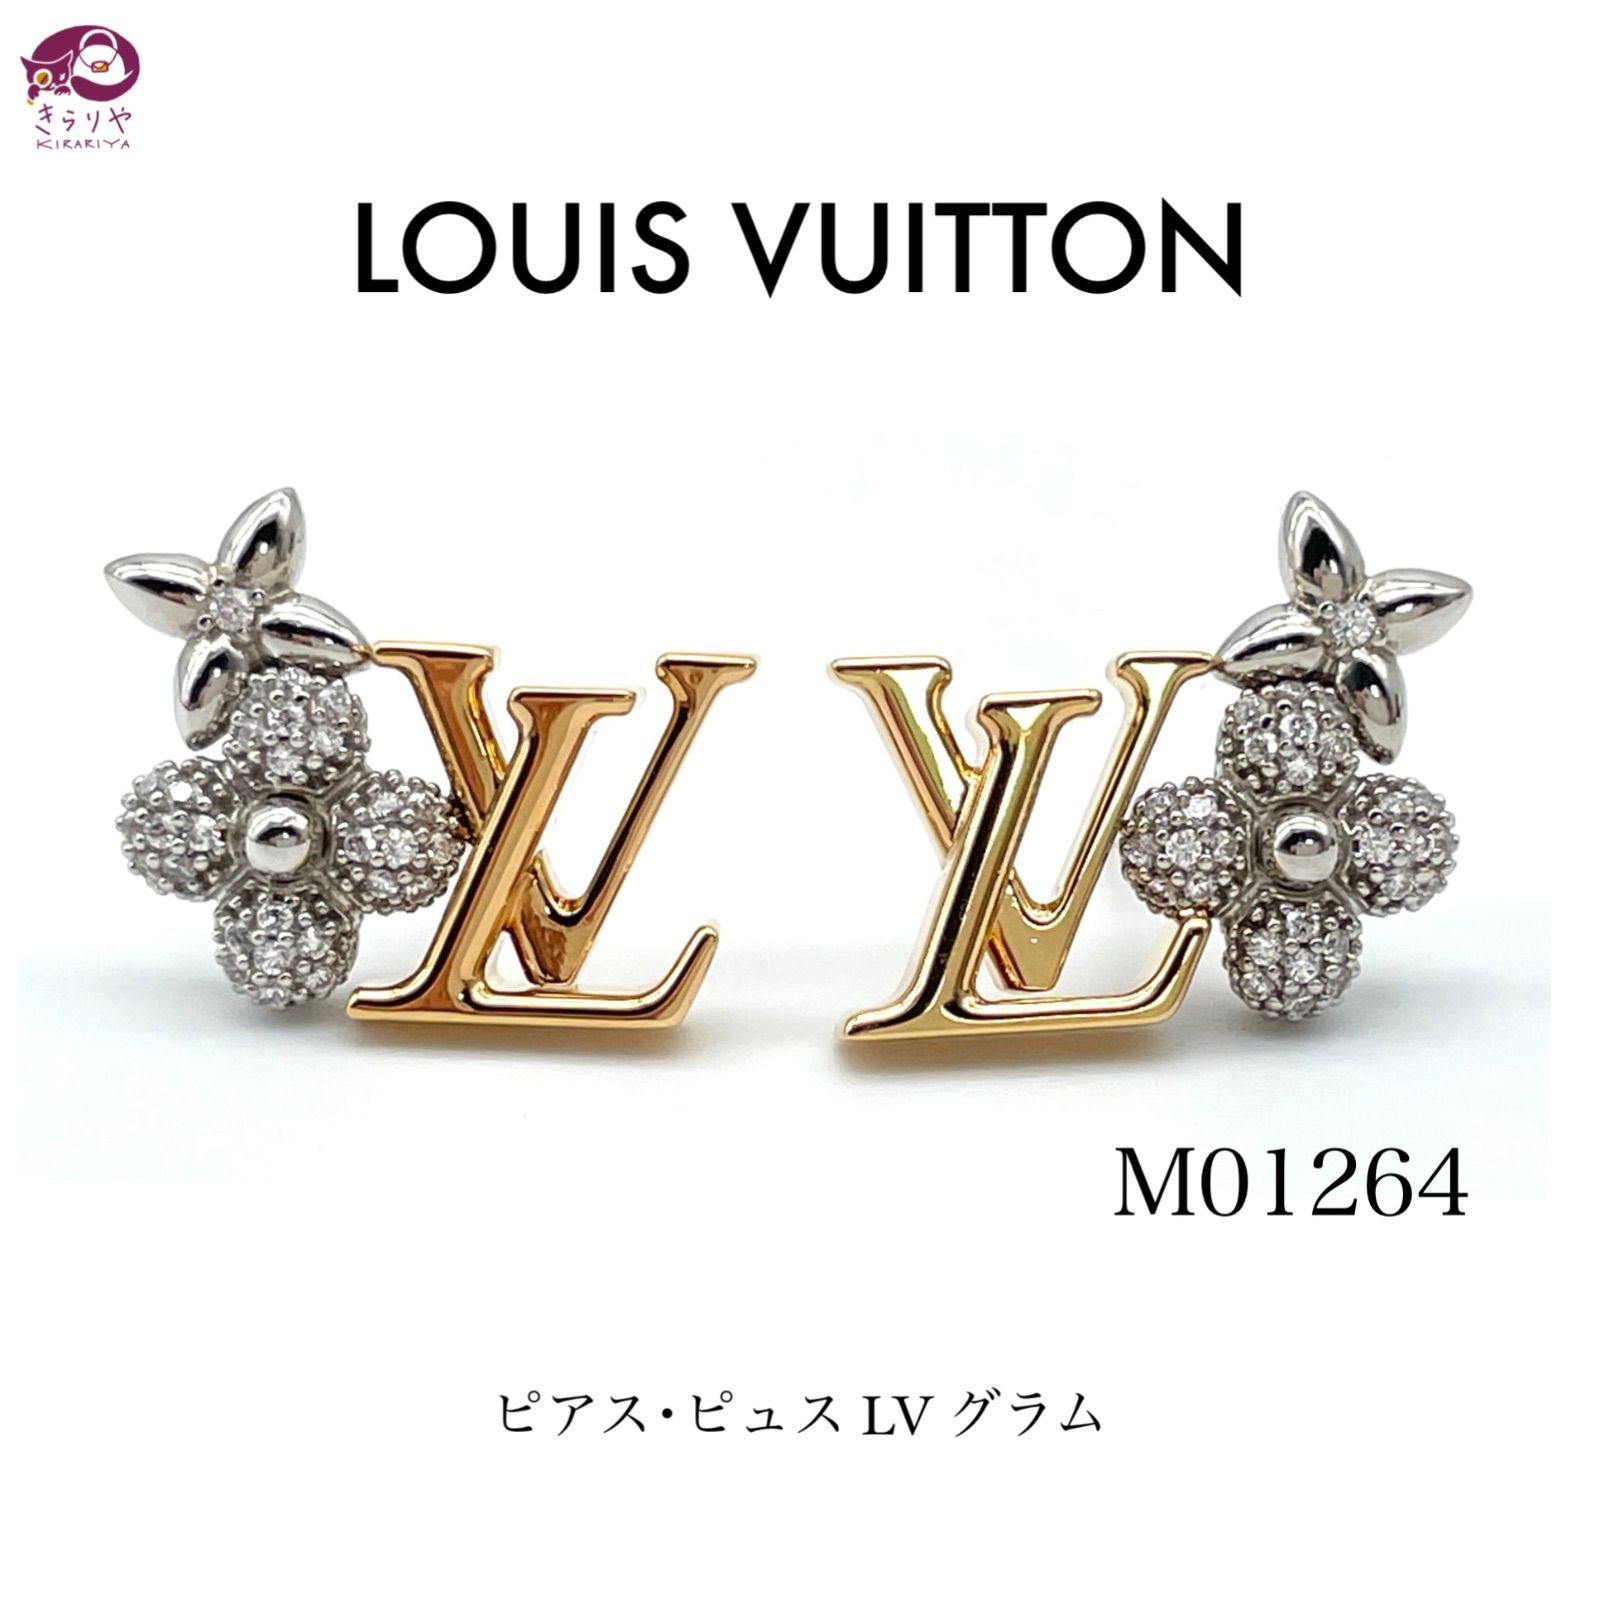 LOUIS VUITTON ルイヴィトン M01264 ピアス・ピュス LV グラム 